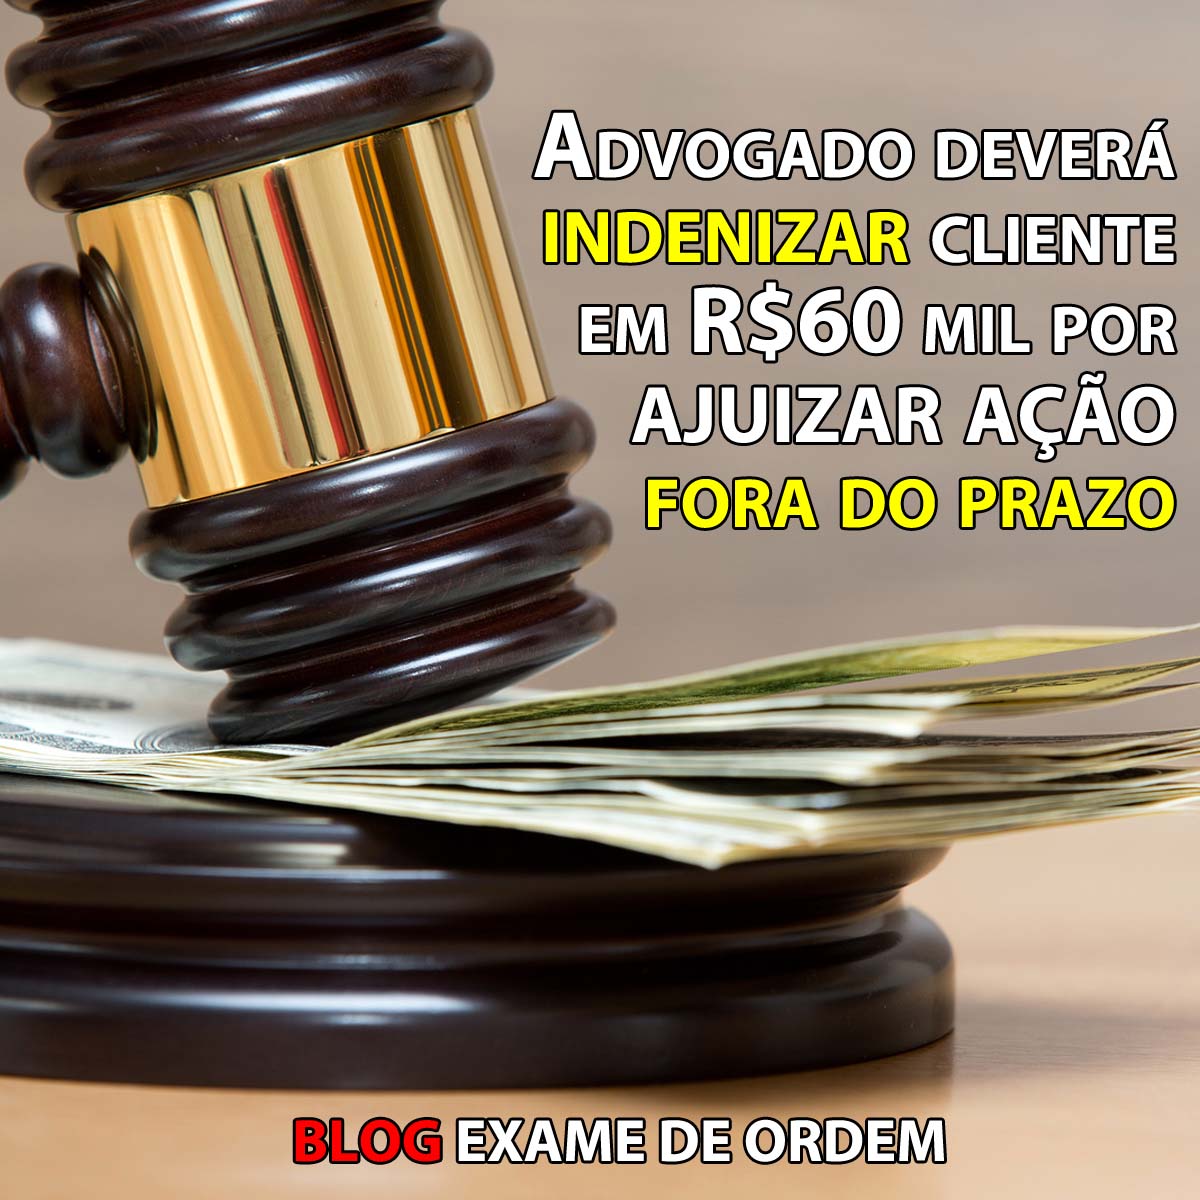 Advogado dever indenizar cliente em R$60 mil por ajuizar ao fora do prazo